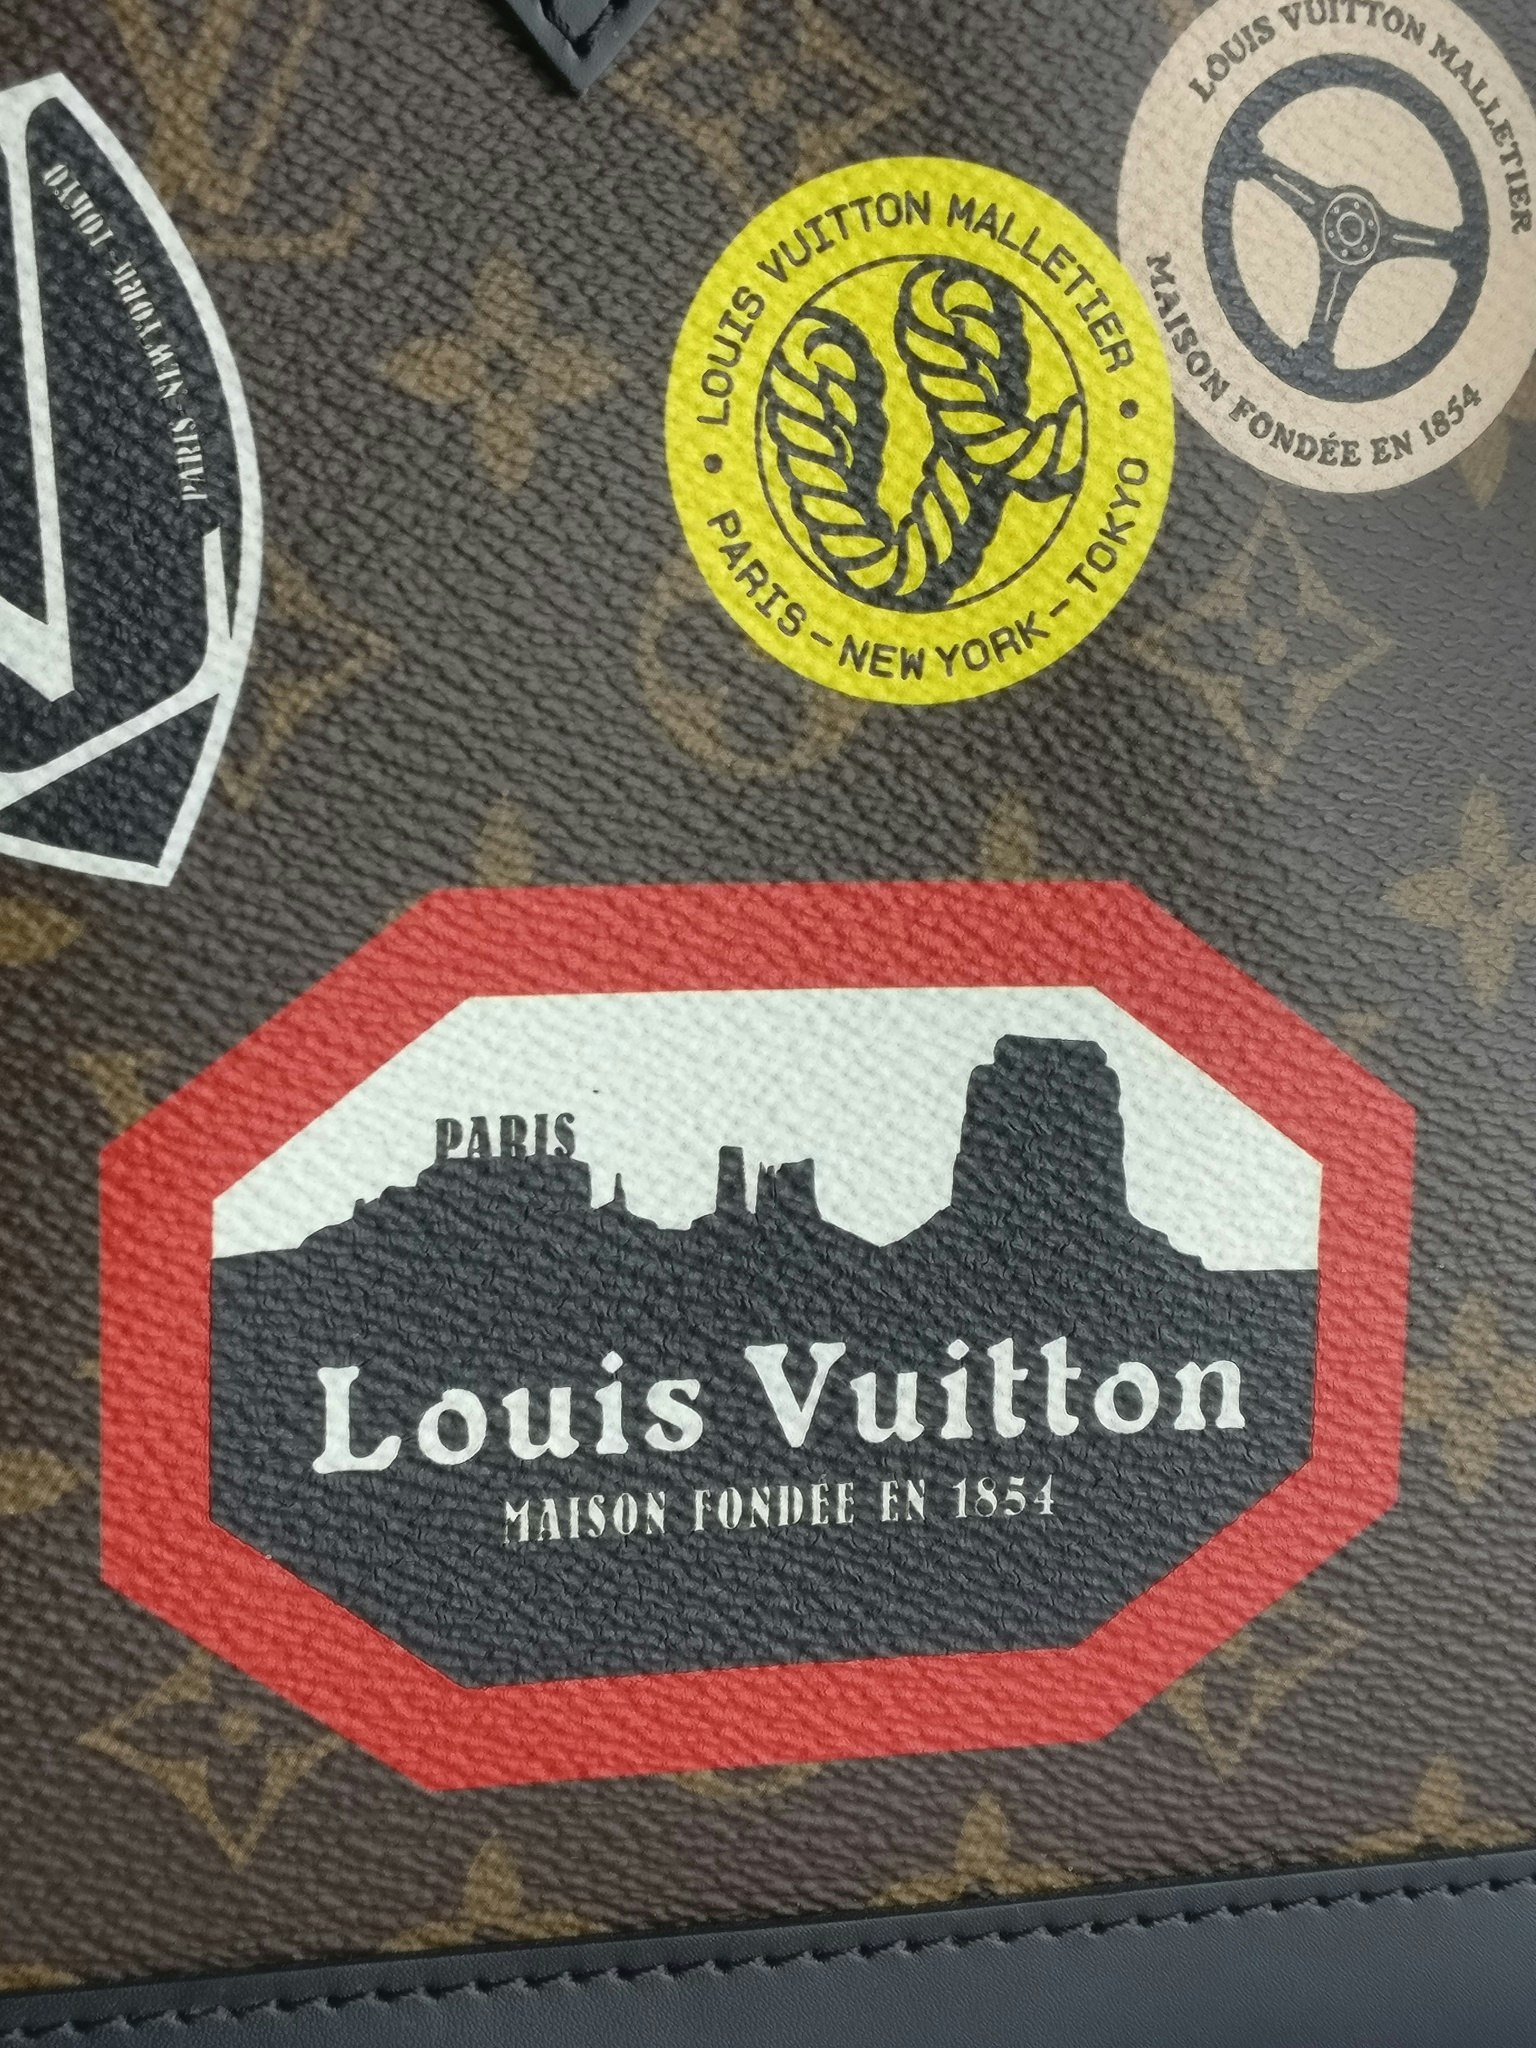 Louis Vuitton Alma PM World Tour